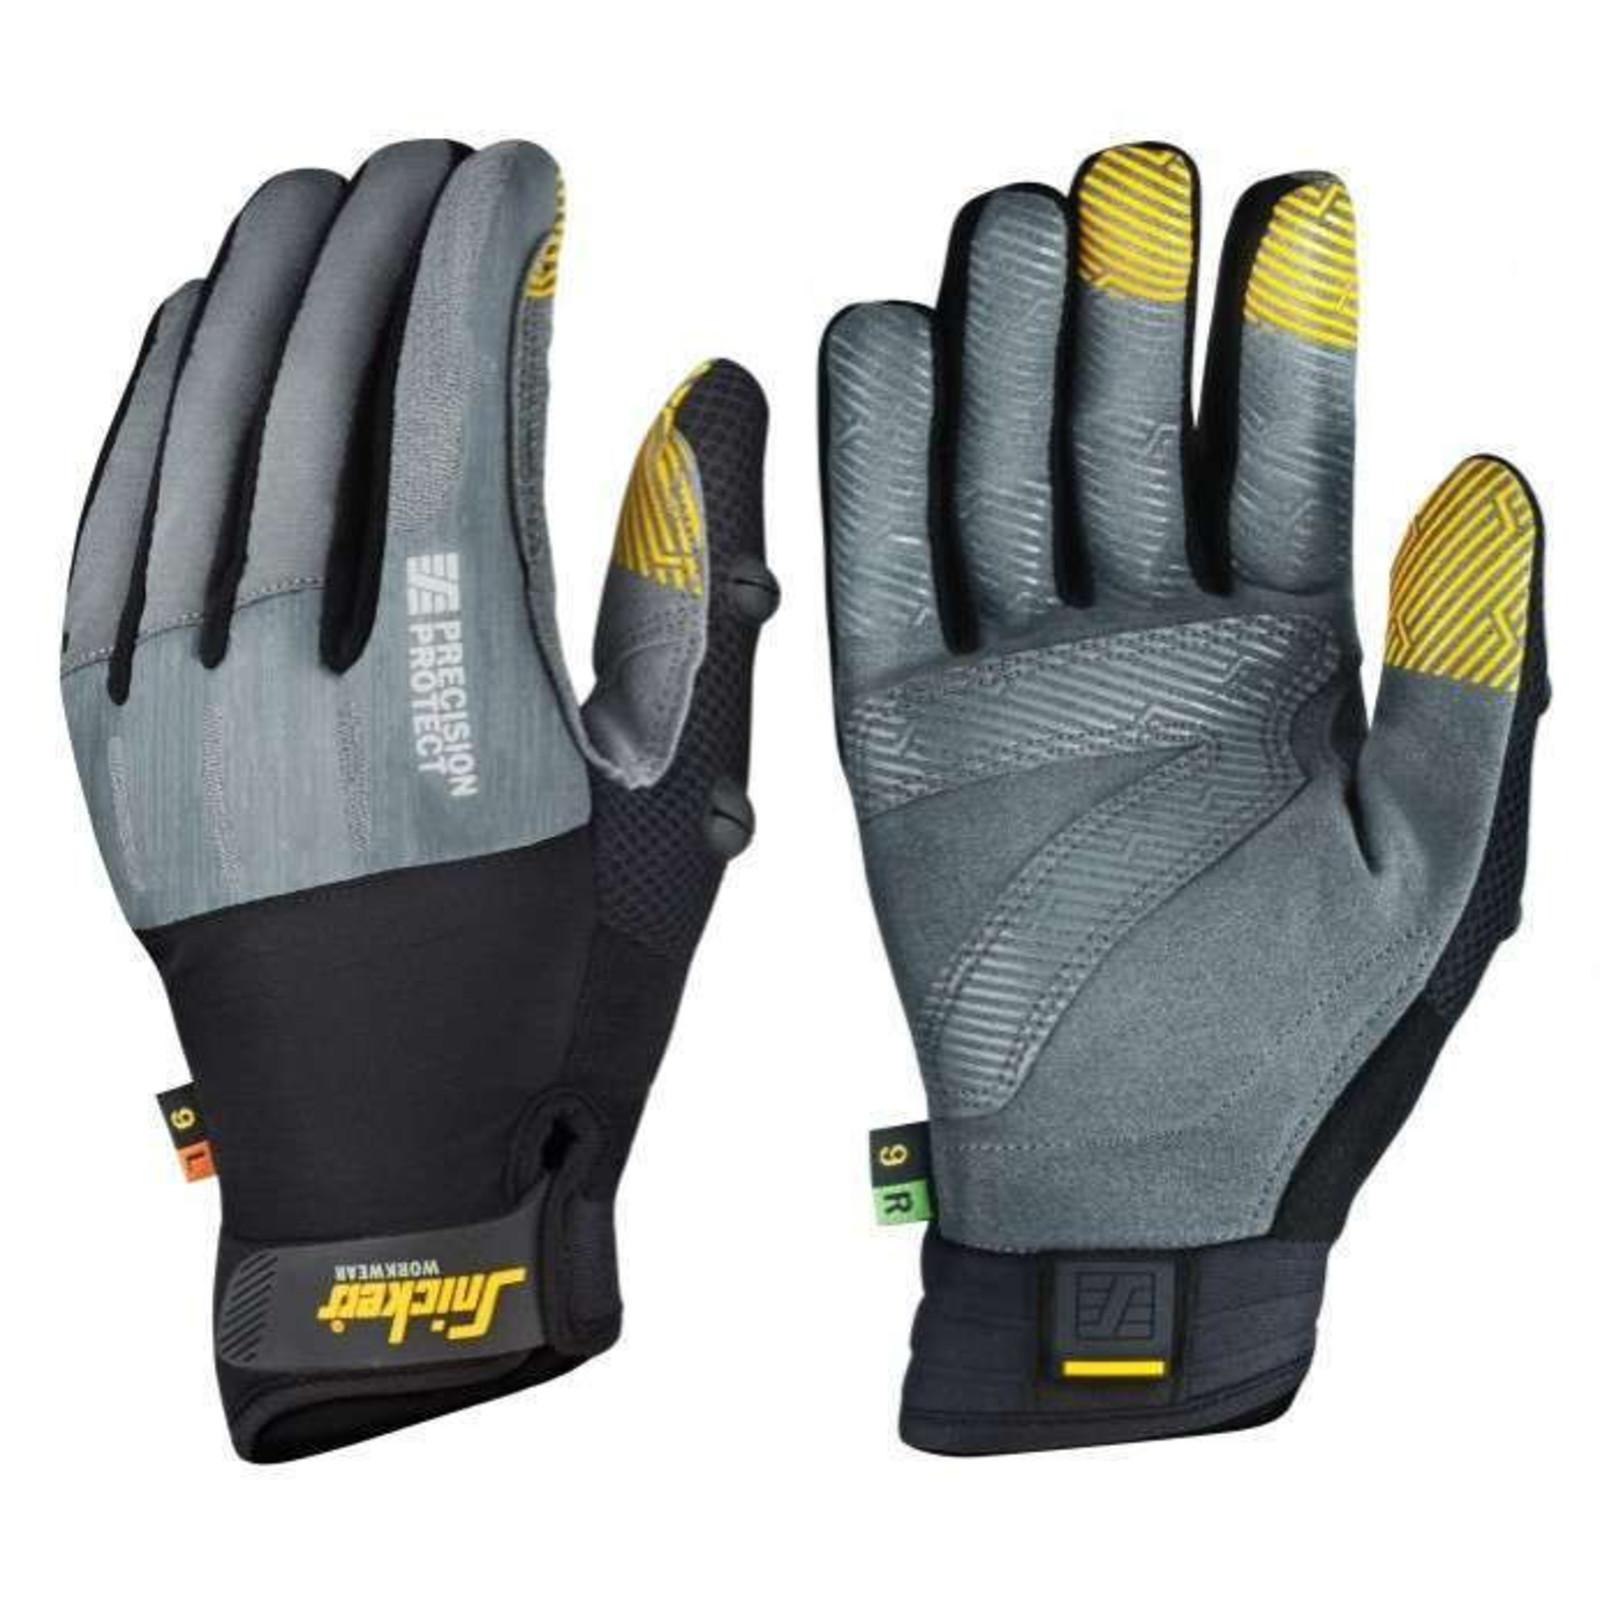 Pracovné rukavice Snickers® Precision Protect kombinované - veľkosť: 11/XXL, farba: sivá/čierna